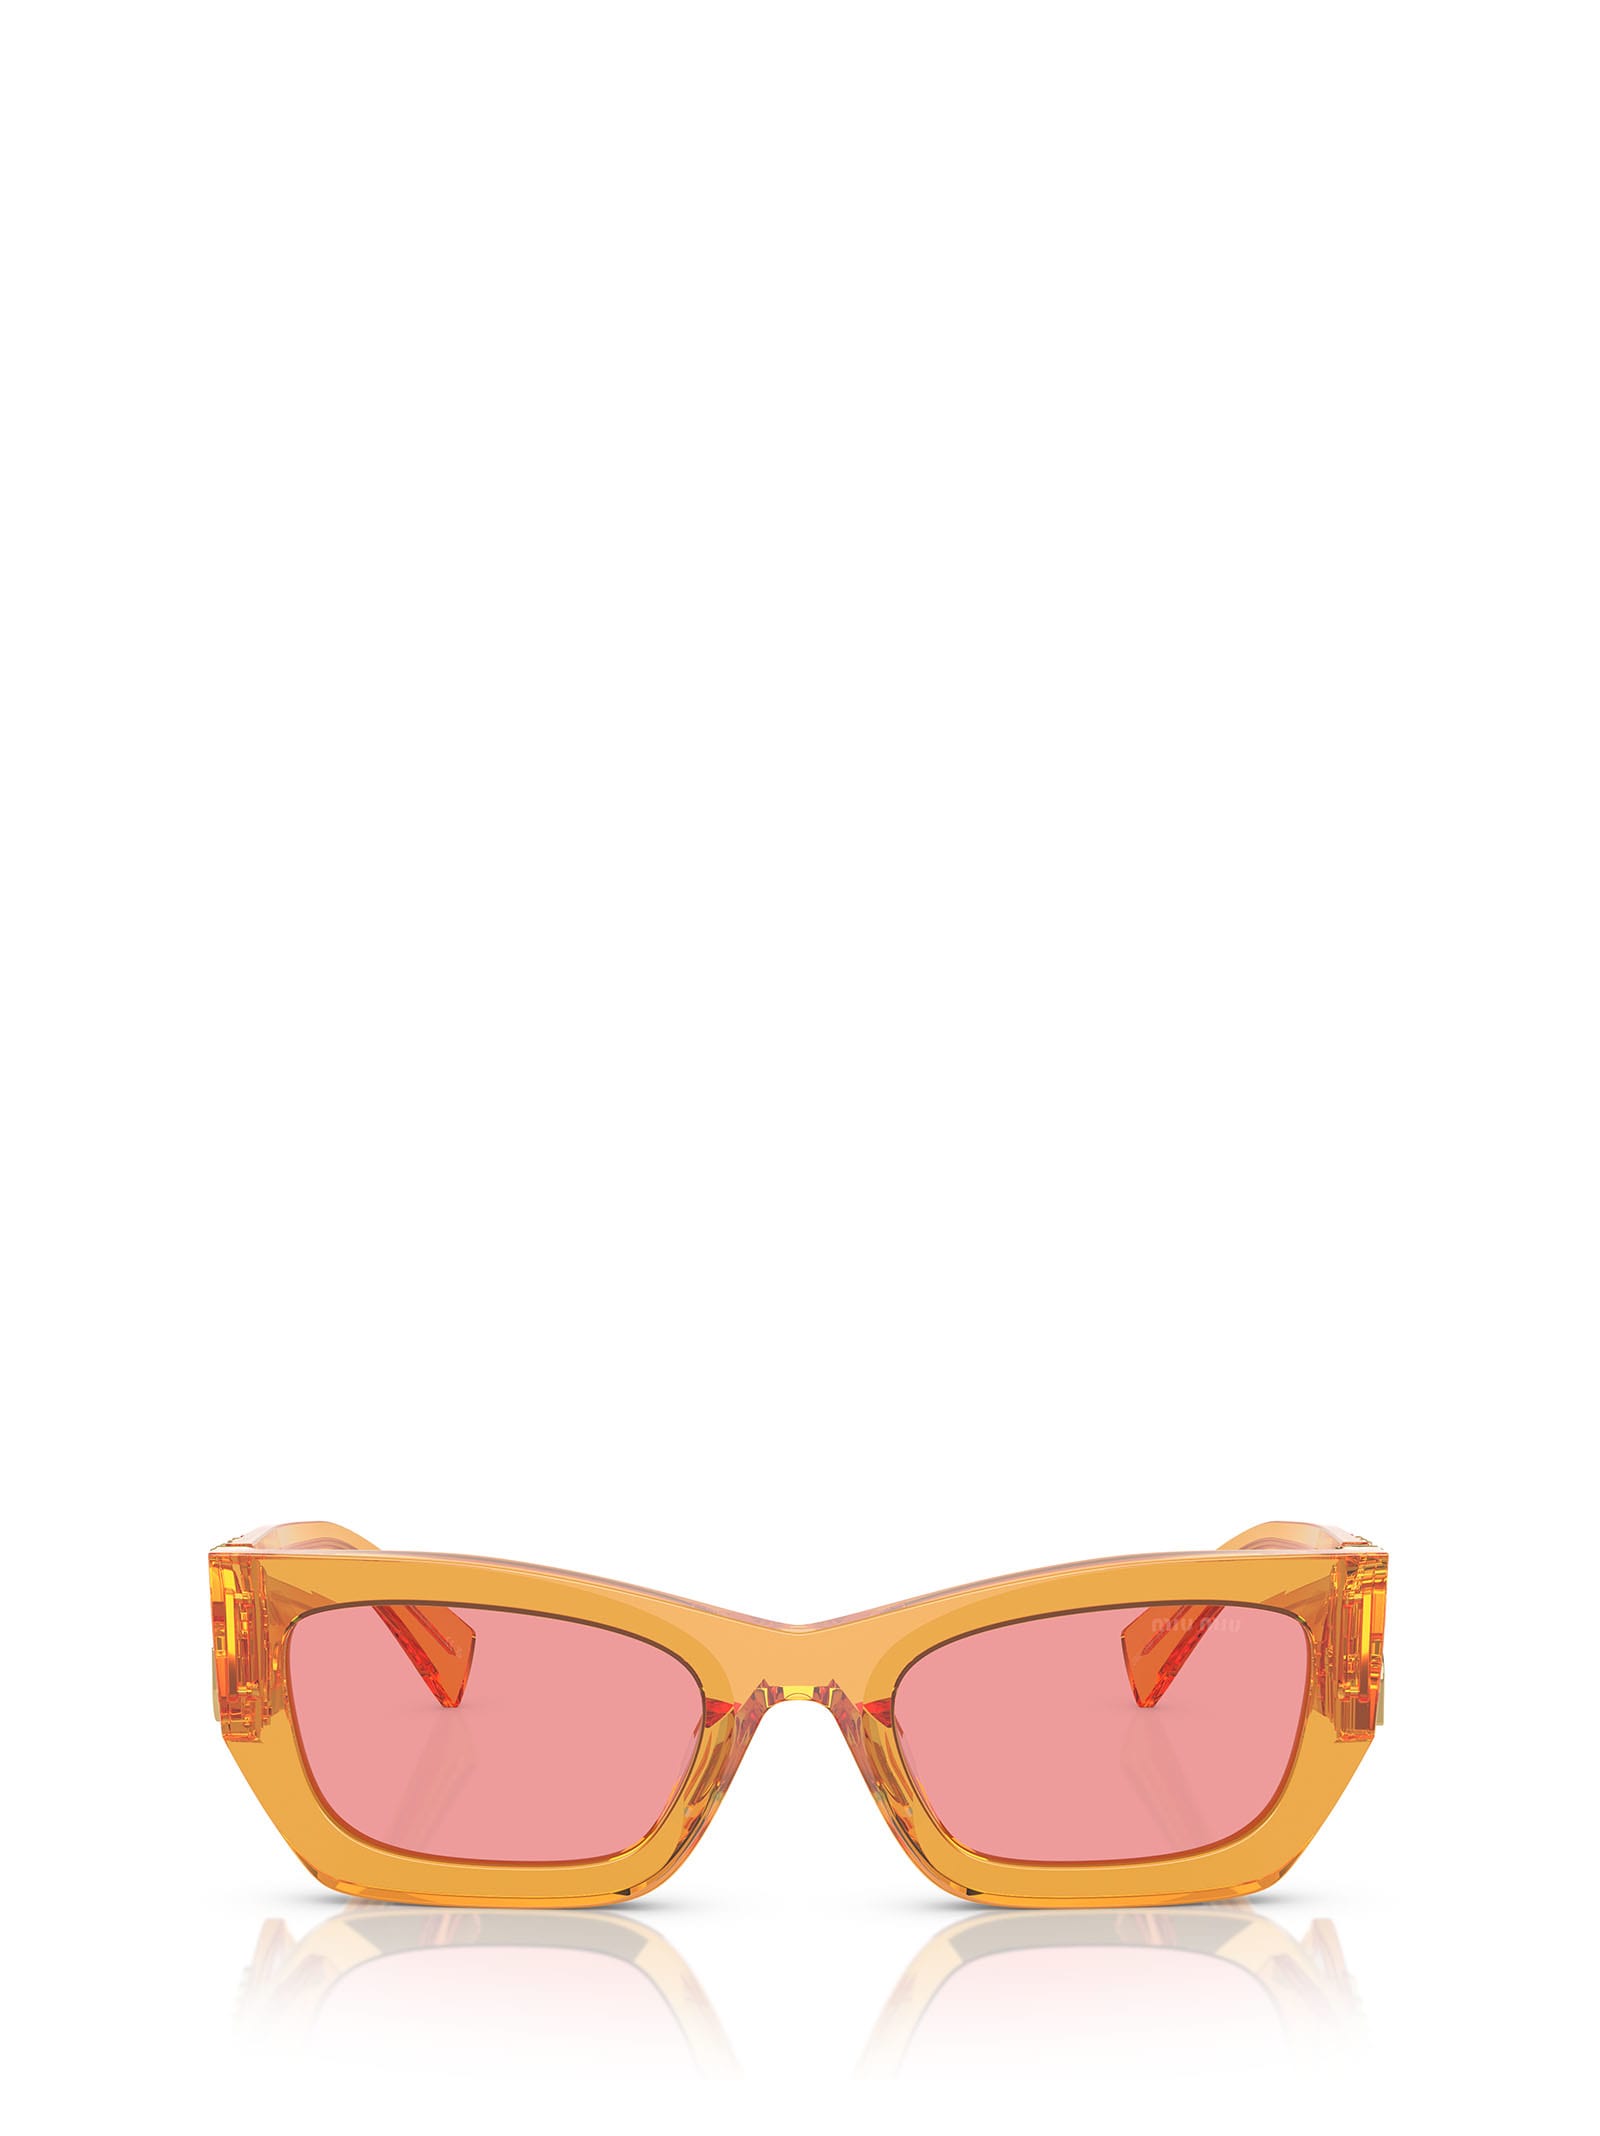 Miu Miu Mu 09ws Orange Transparent Sunglasses